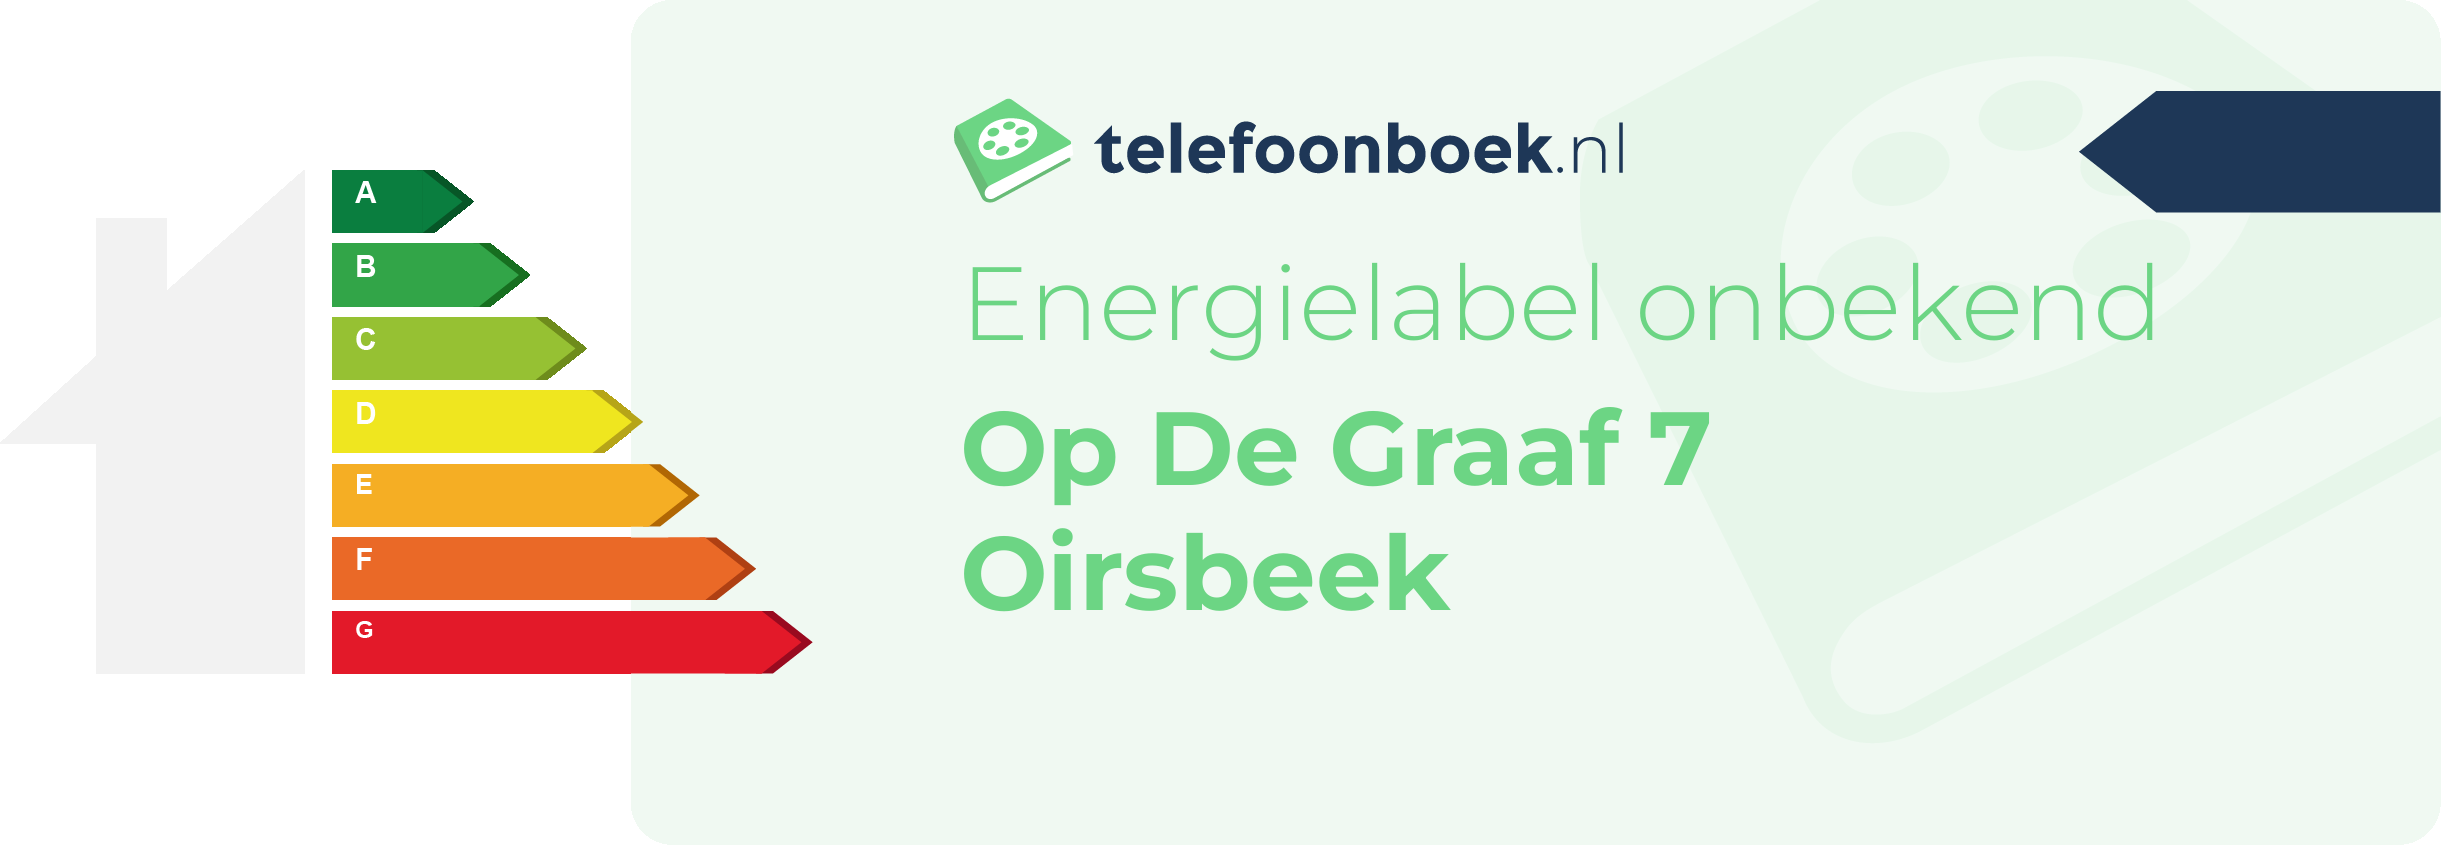 Energielabel Op De Graaf 7 Oirsbeek